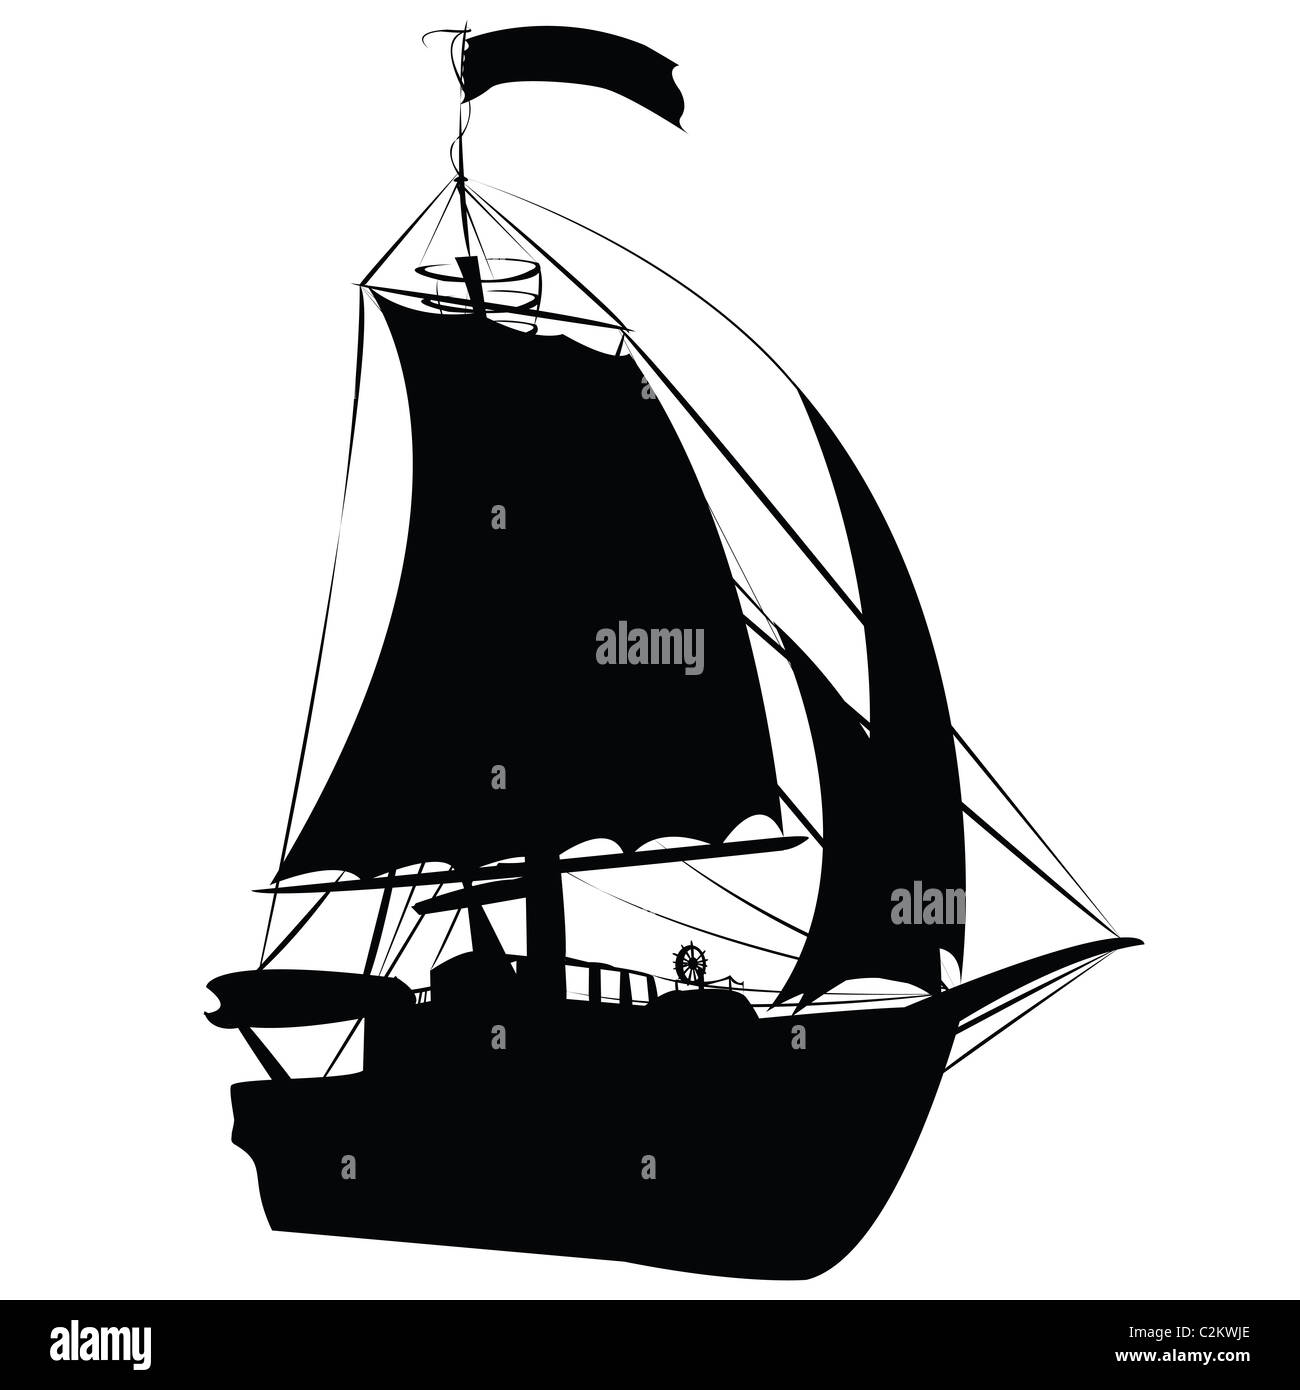 Small sailing ship Stock Photo